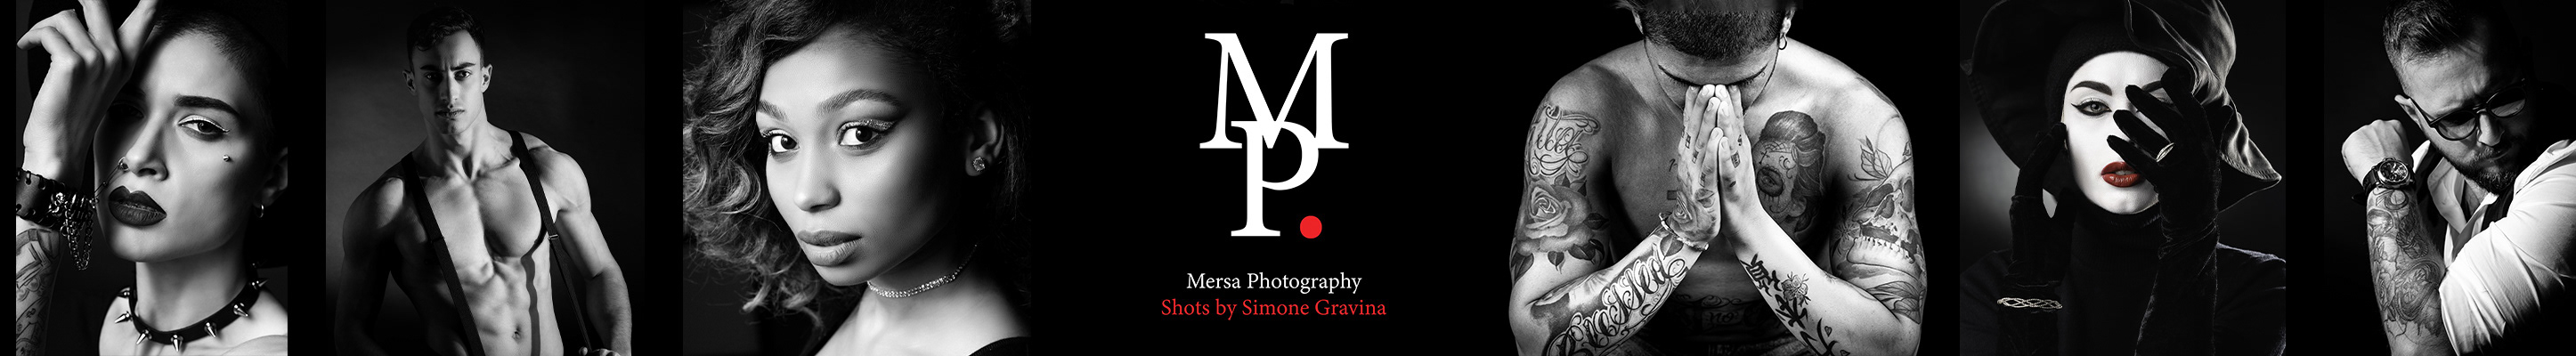 Simone Gravina's profile banner